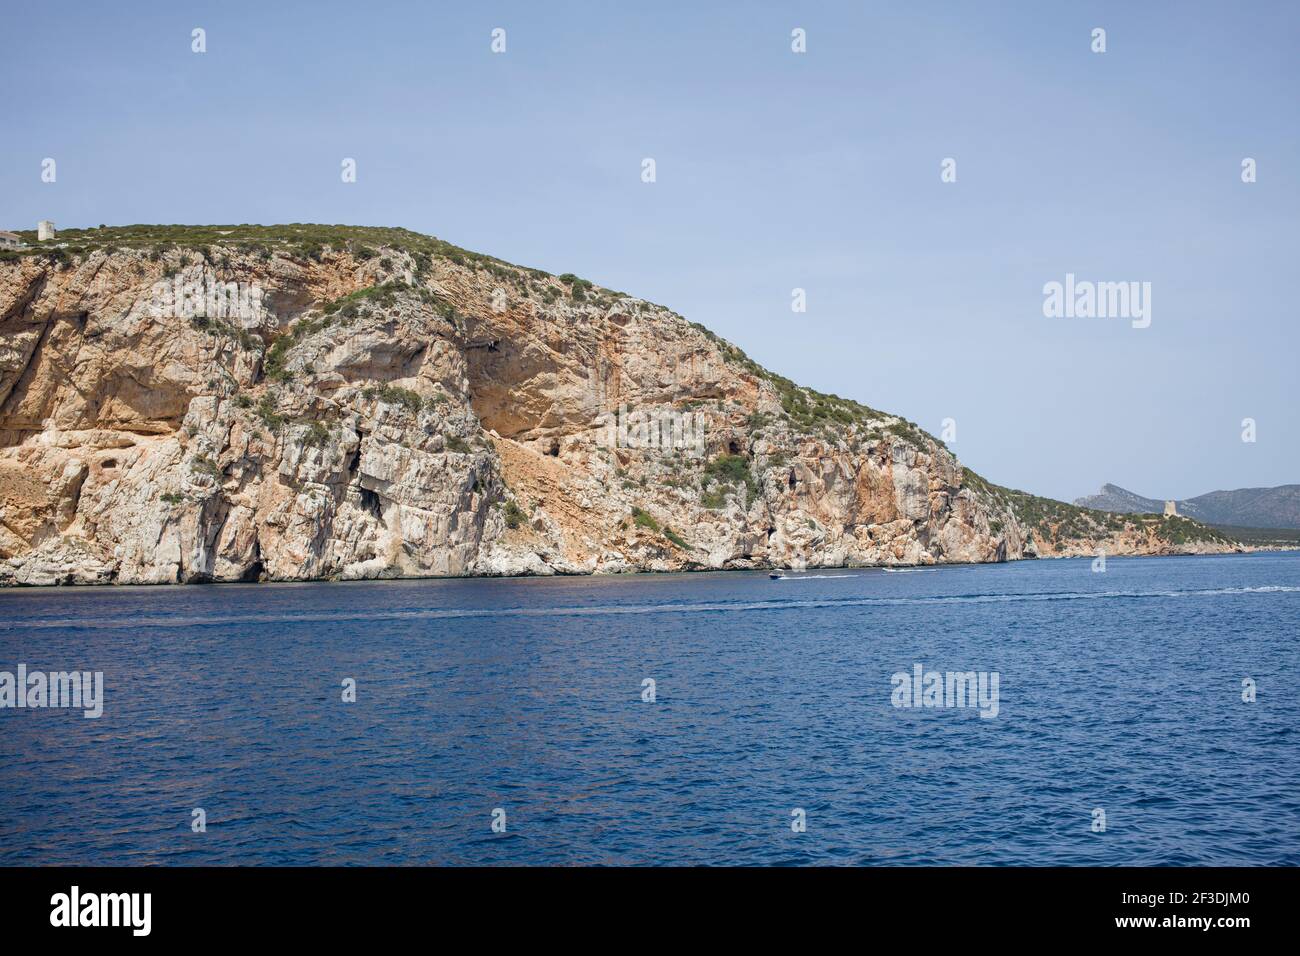 Küste mit Blick auf eine große Klippe vom Meer aus. Lage ist Porte Conte Regional National Park, Alghero Sardinien. Stockfoto